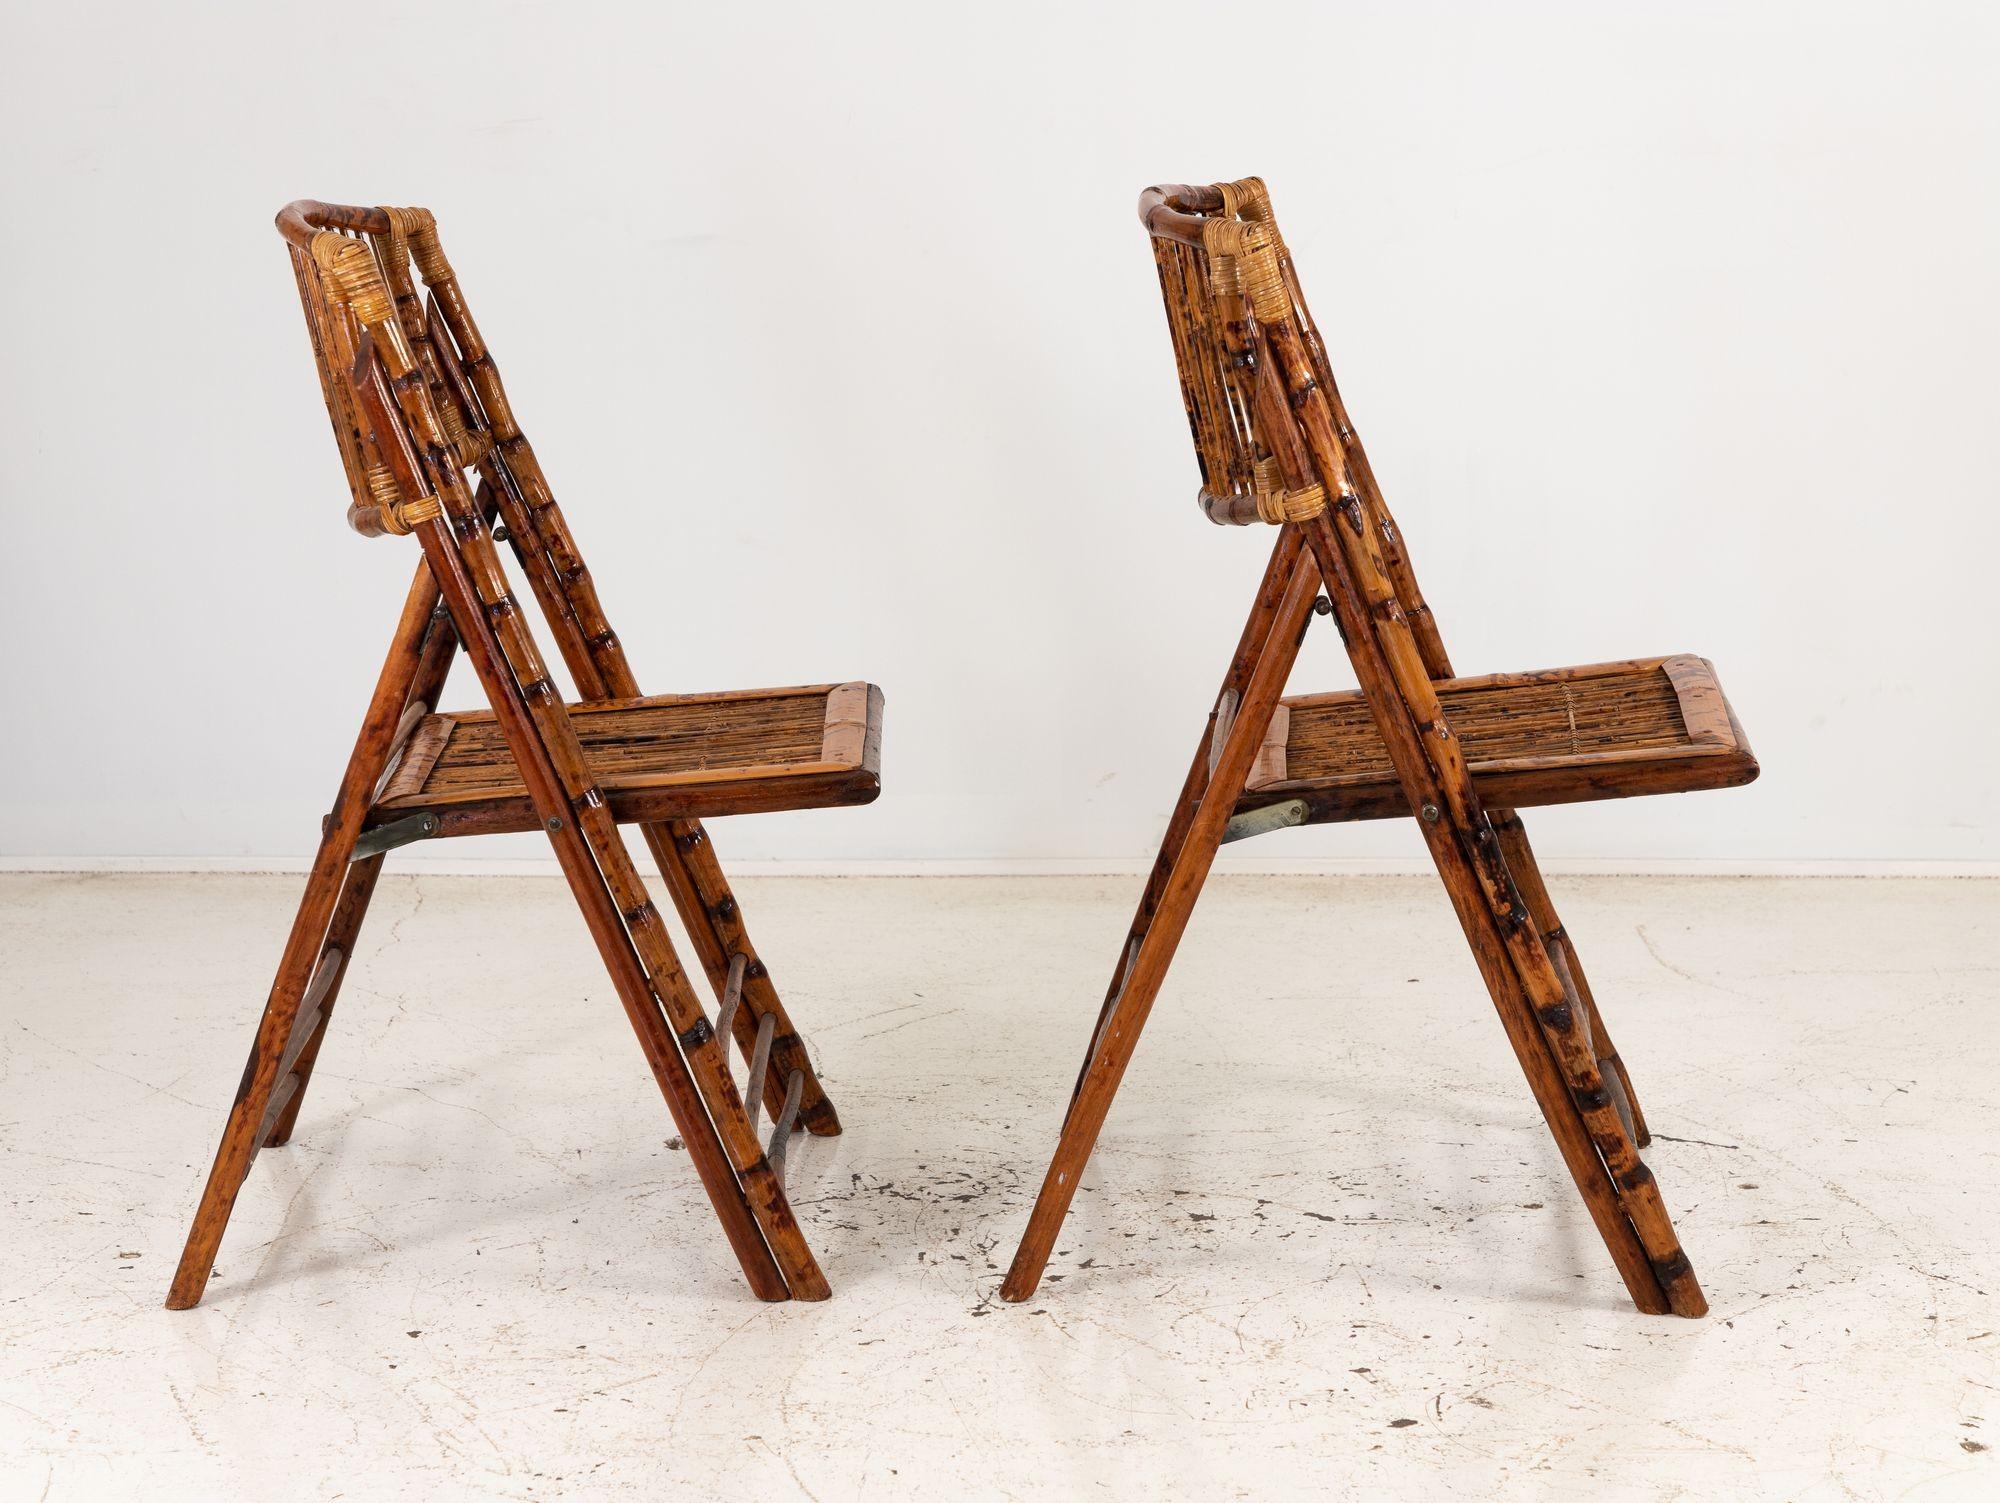 Cette jolie paire de chaises de jardin pliantes est fabriquée avec la beauté intemporelle du bambou. Ces chaises respectueuses de l'environnement allient harmonieusement élégance naturelle et fonctionnalité pratique. Les cadres en bambou offrent une